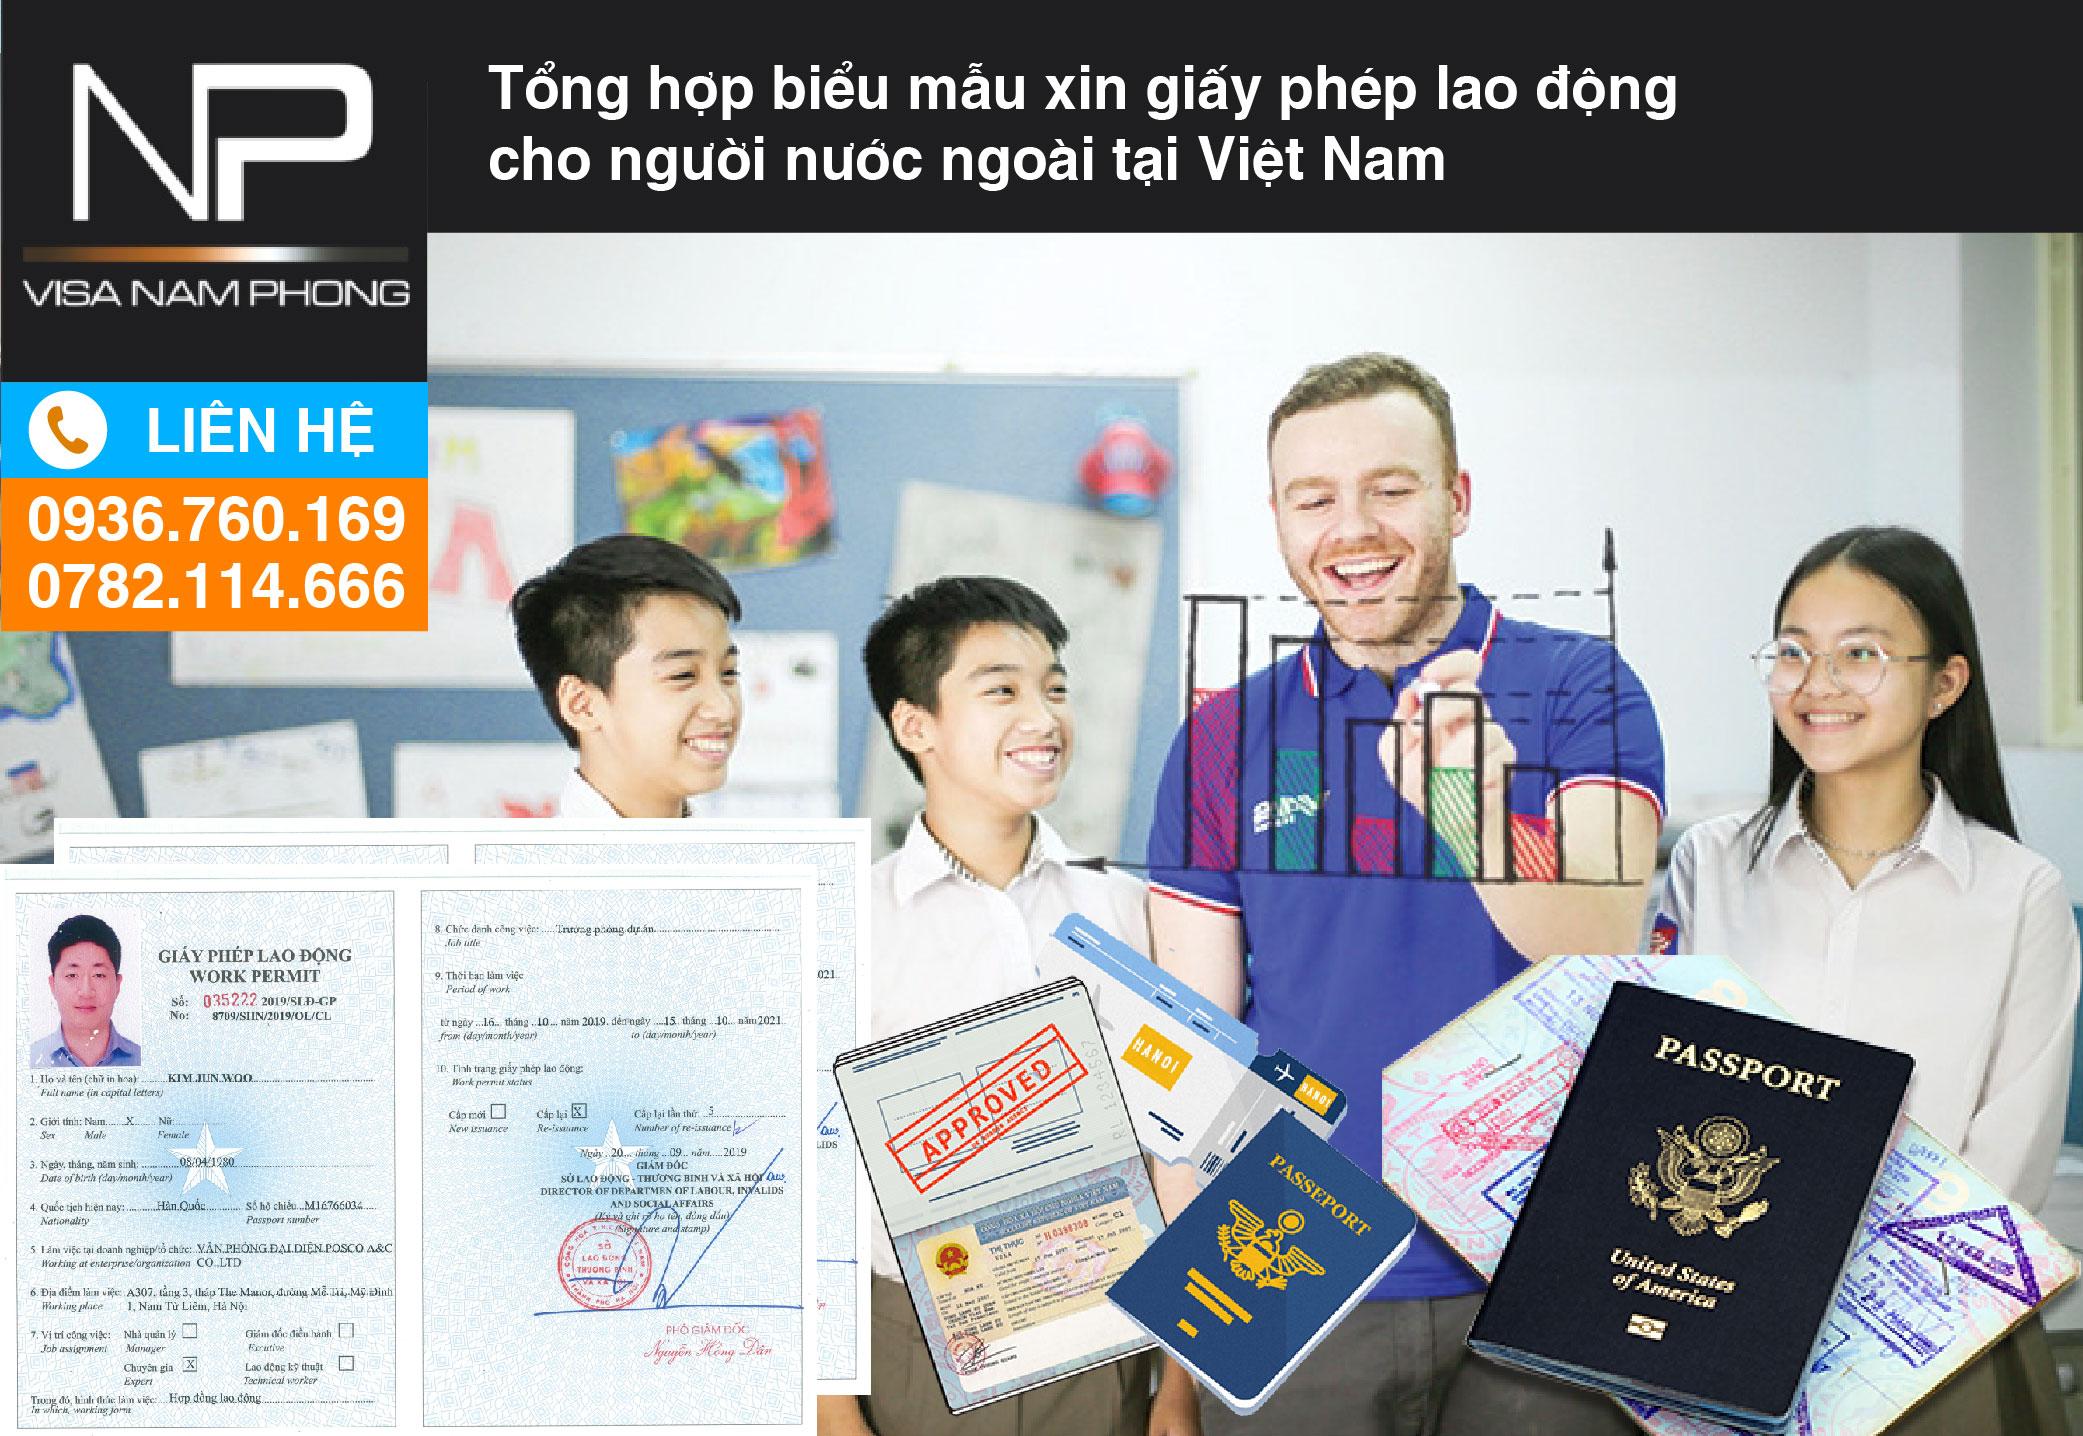 Biểu mẫu xin giấy phép lao động cho người nước ngoài tại Việt Nam 